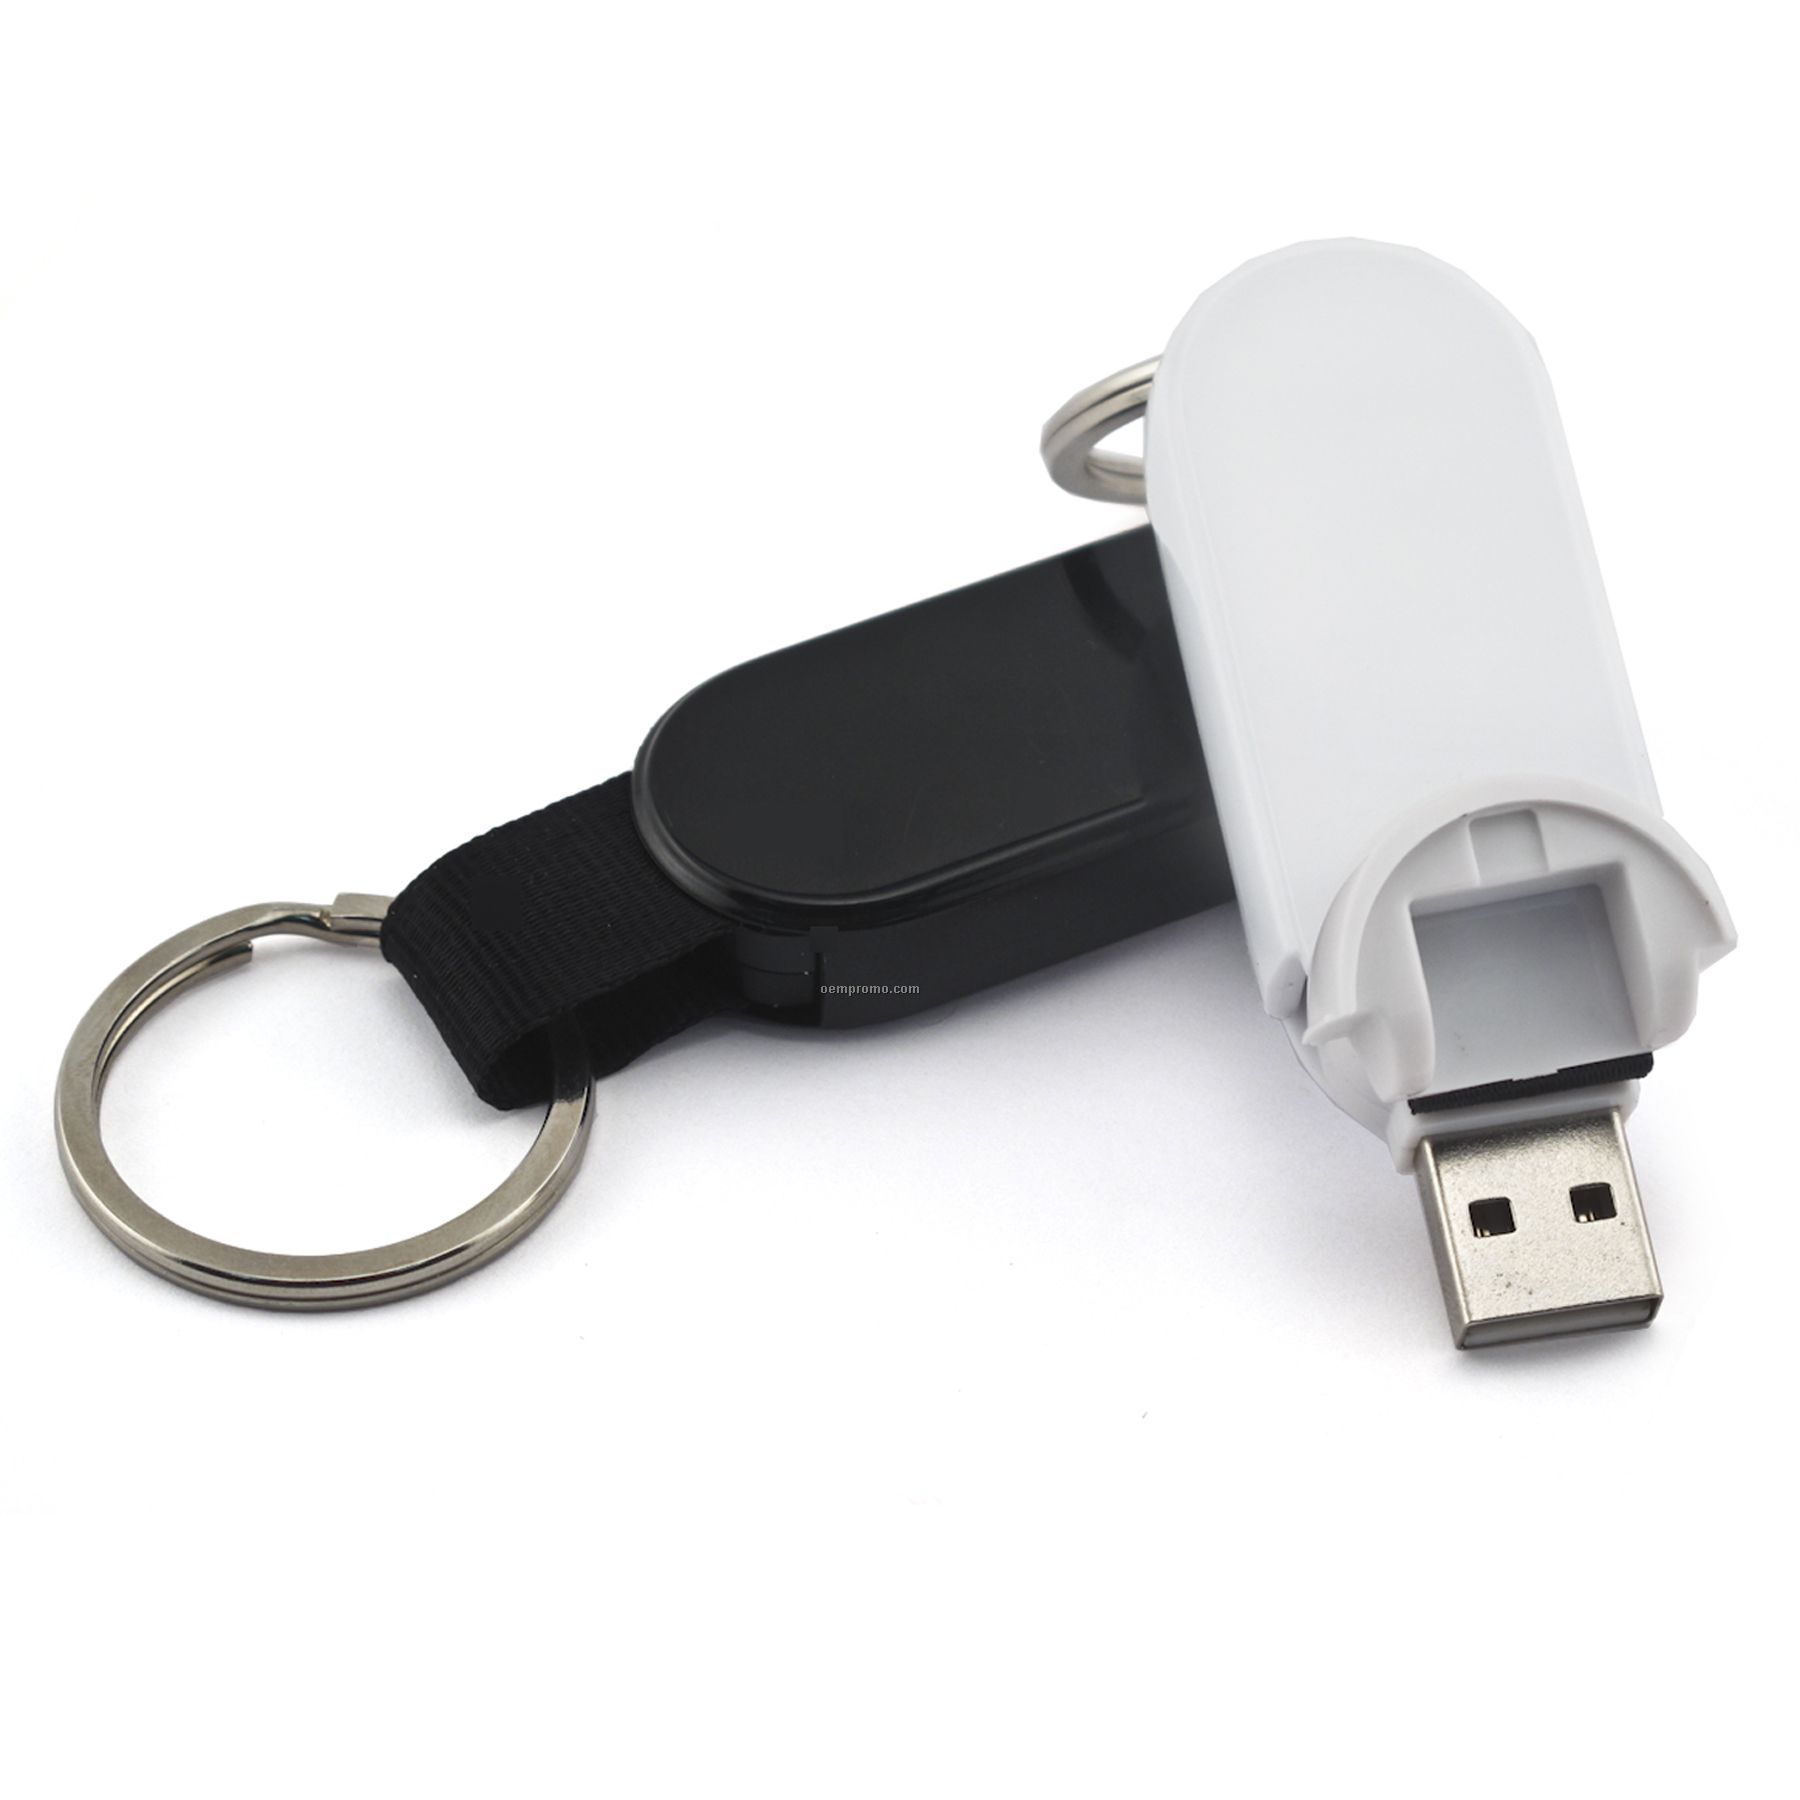 2 Gb Retractable USB Drive 700 Series